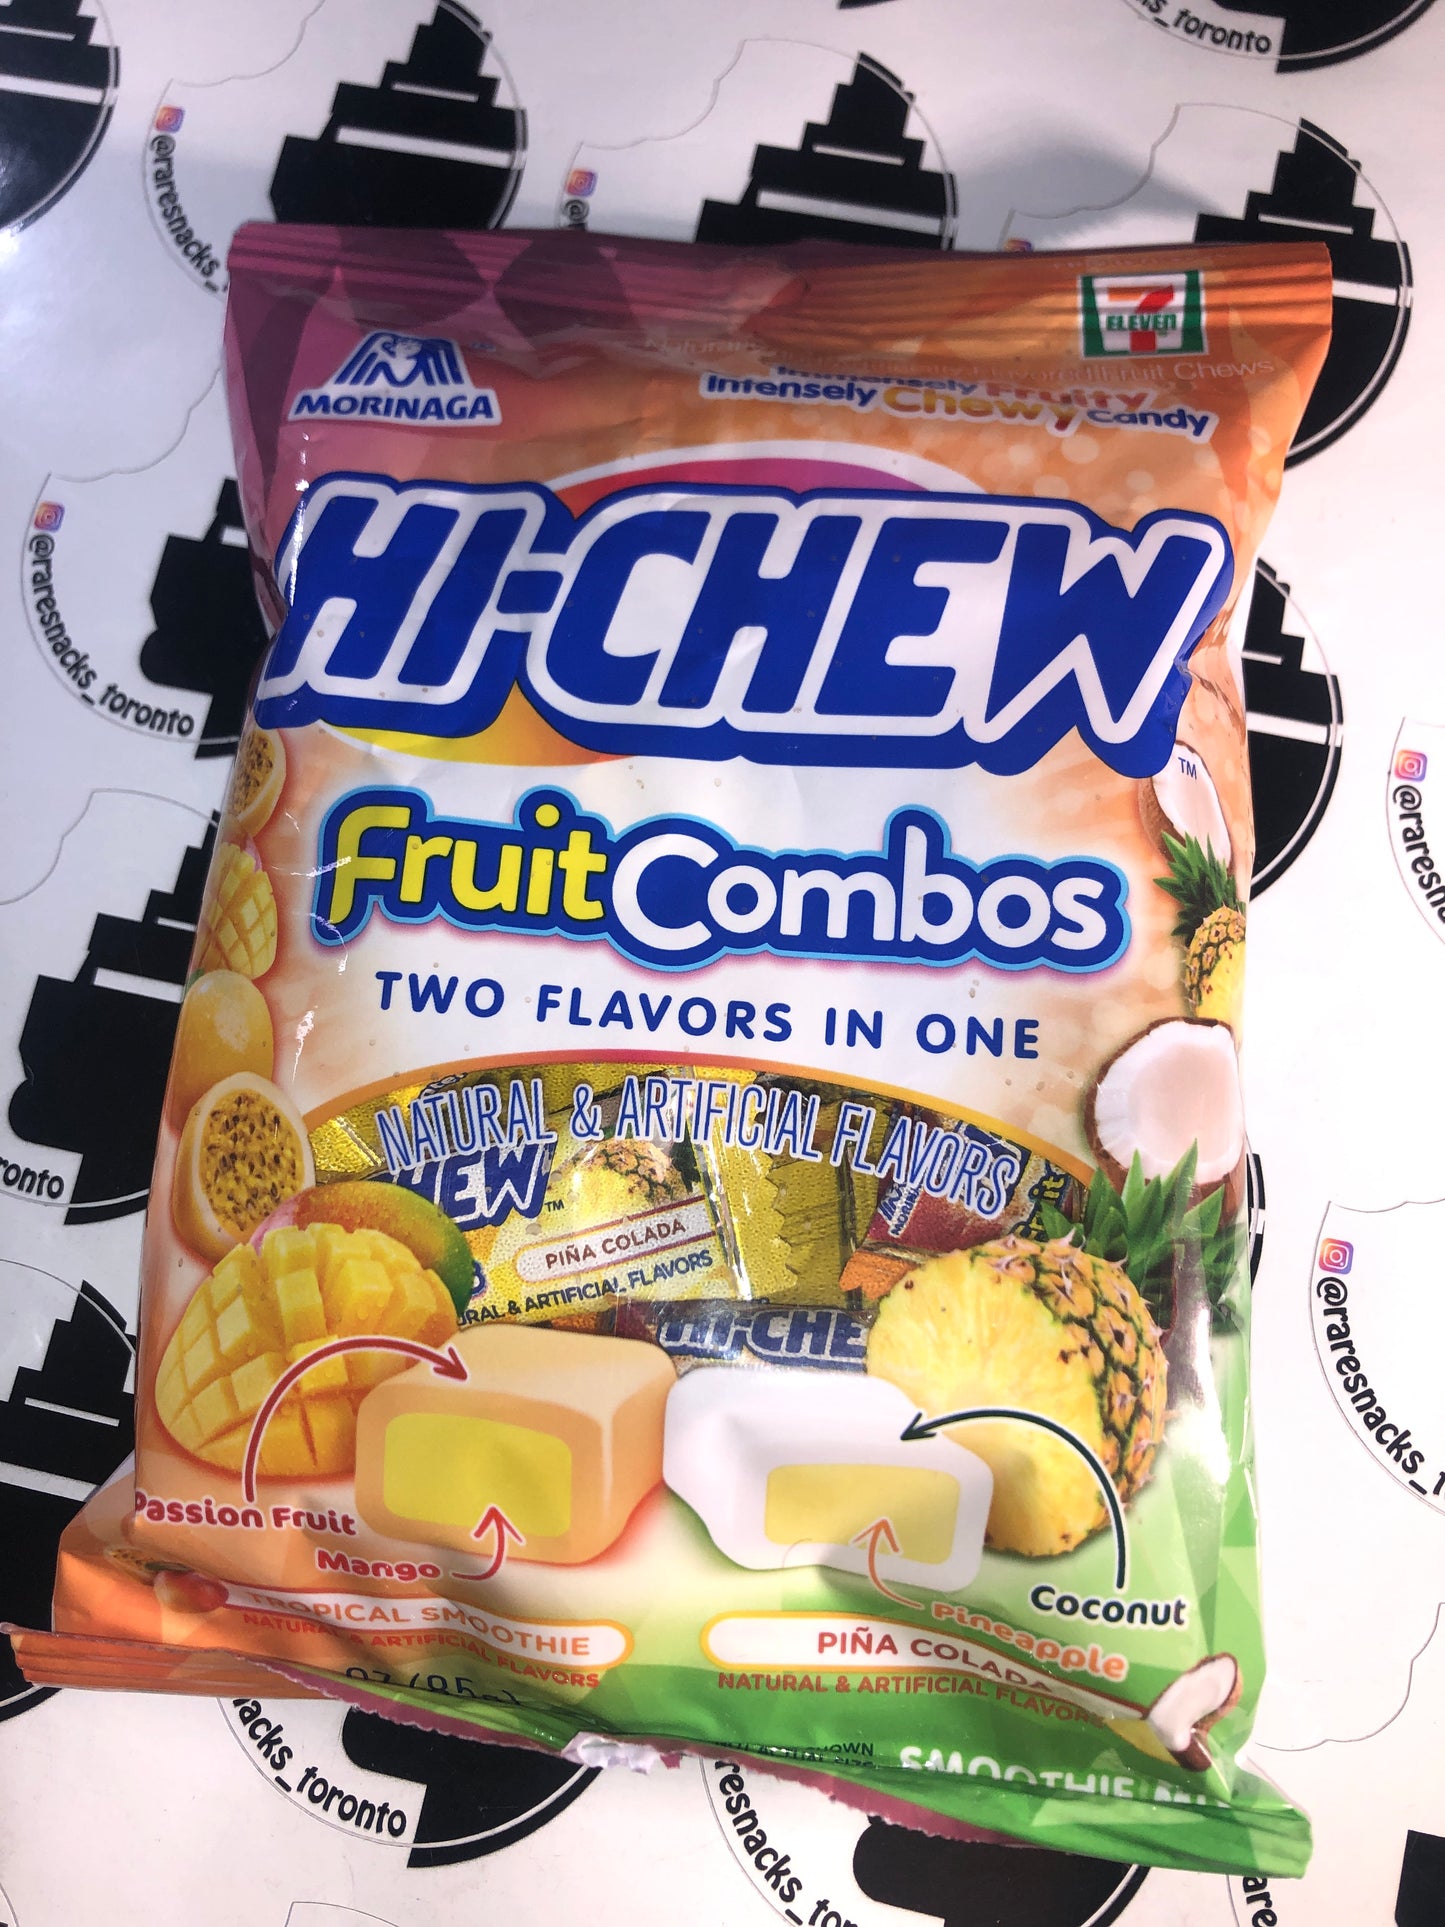 Hi-chew Fruit Combos